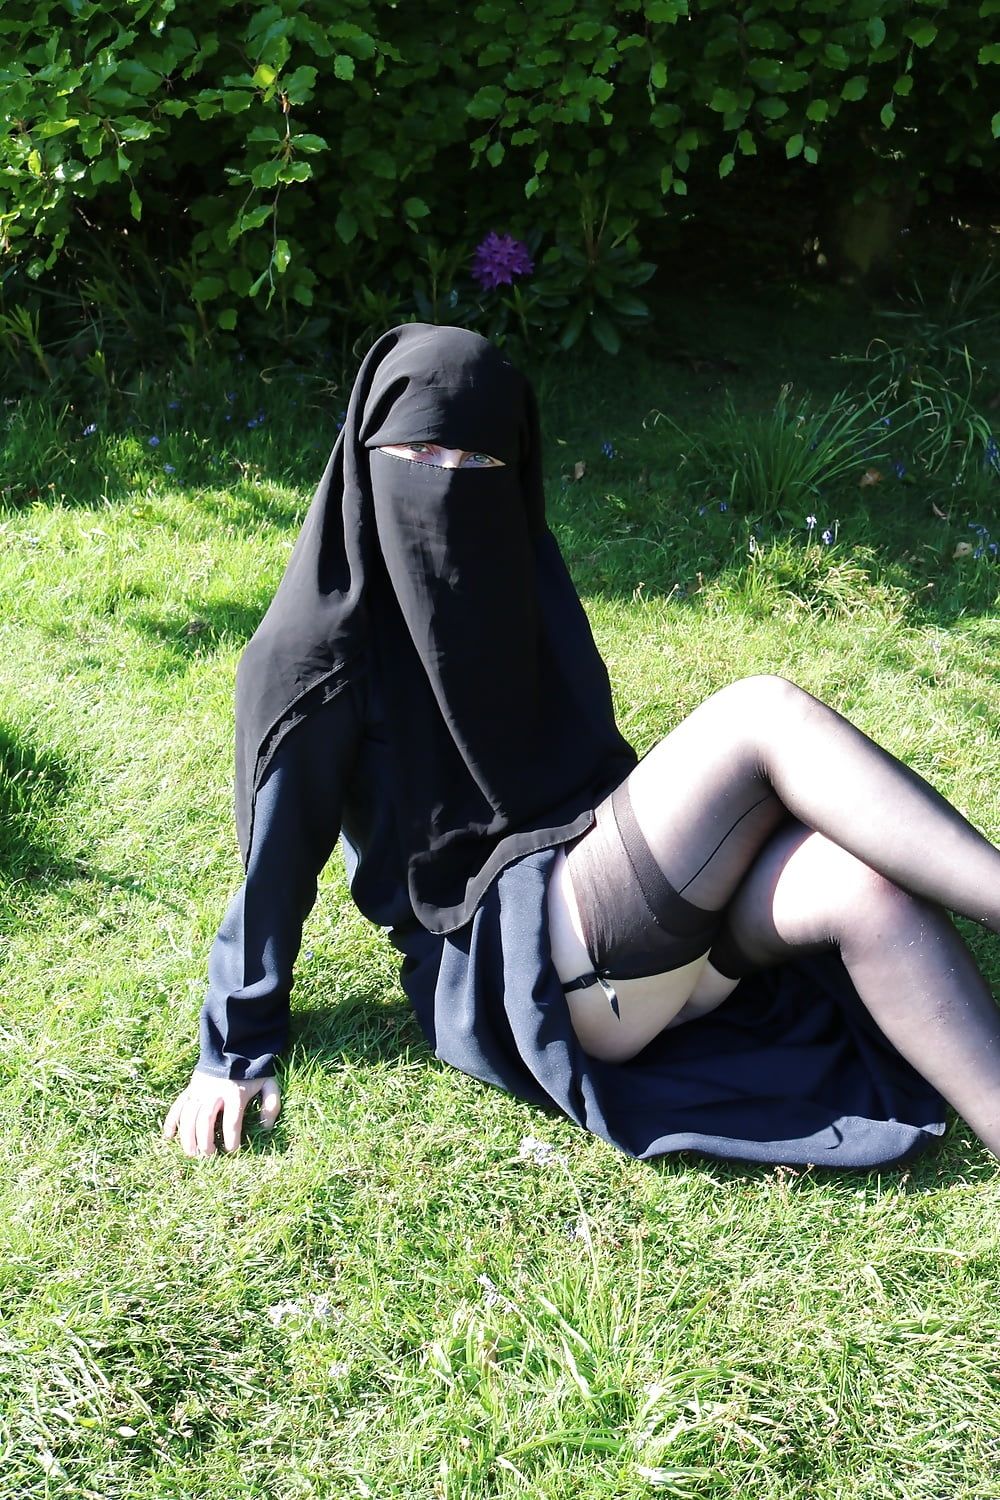 Muslim Burqa Niqab suspenders Outdoors Flashing  #26